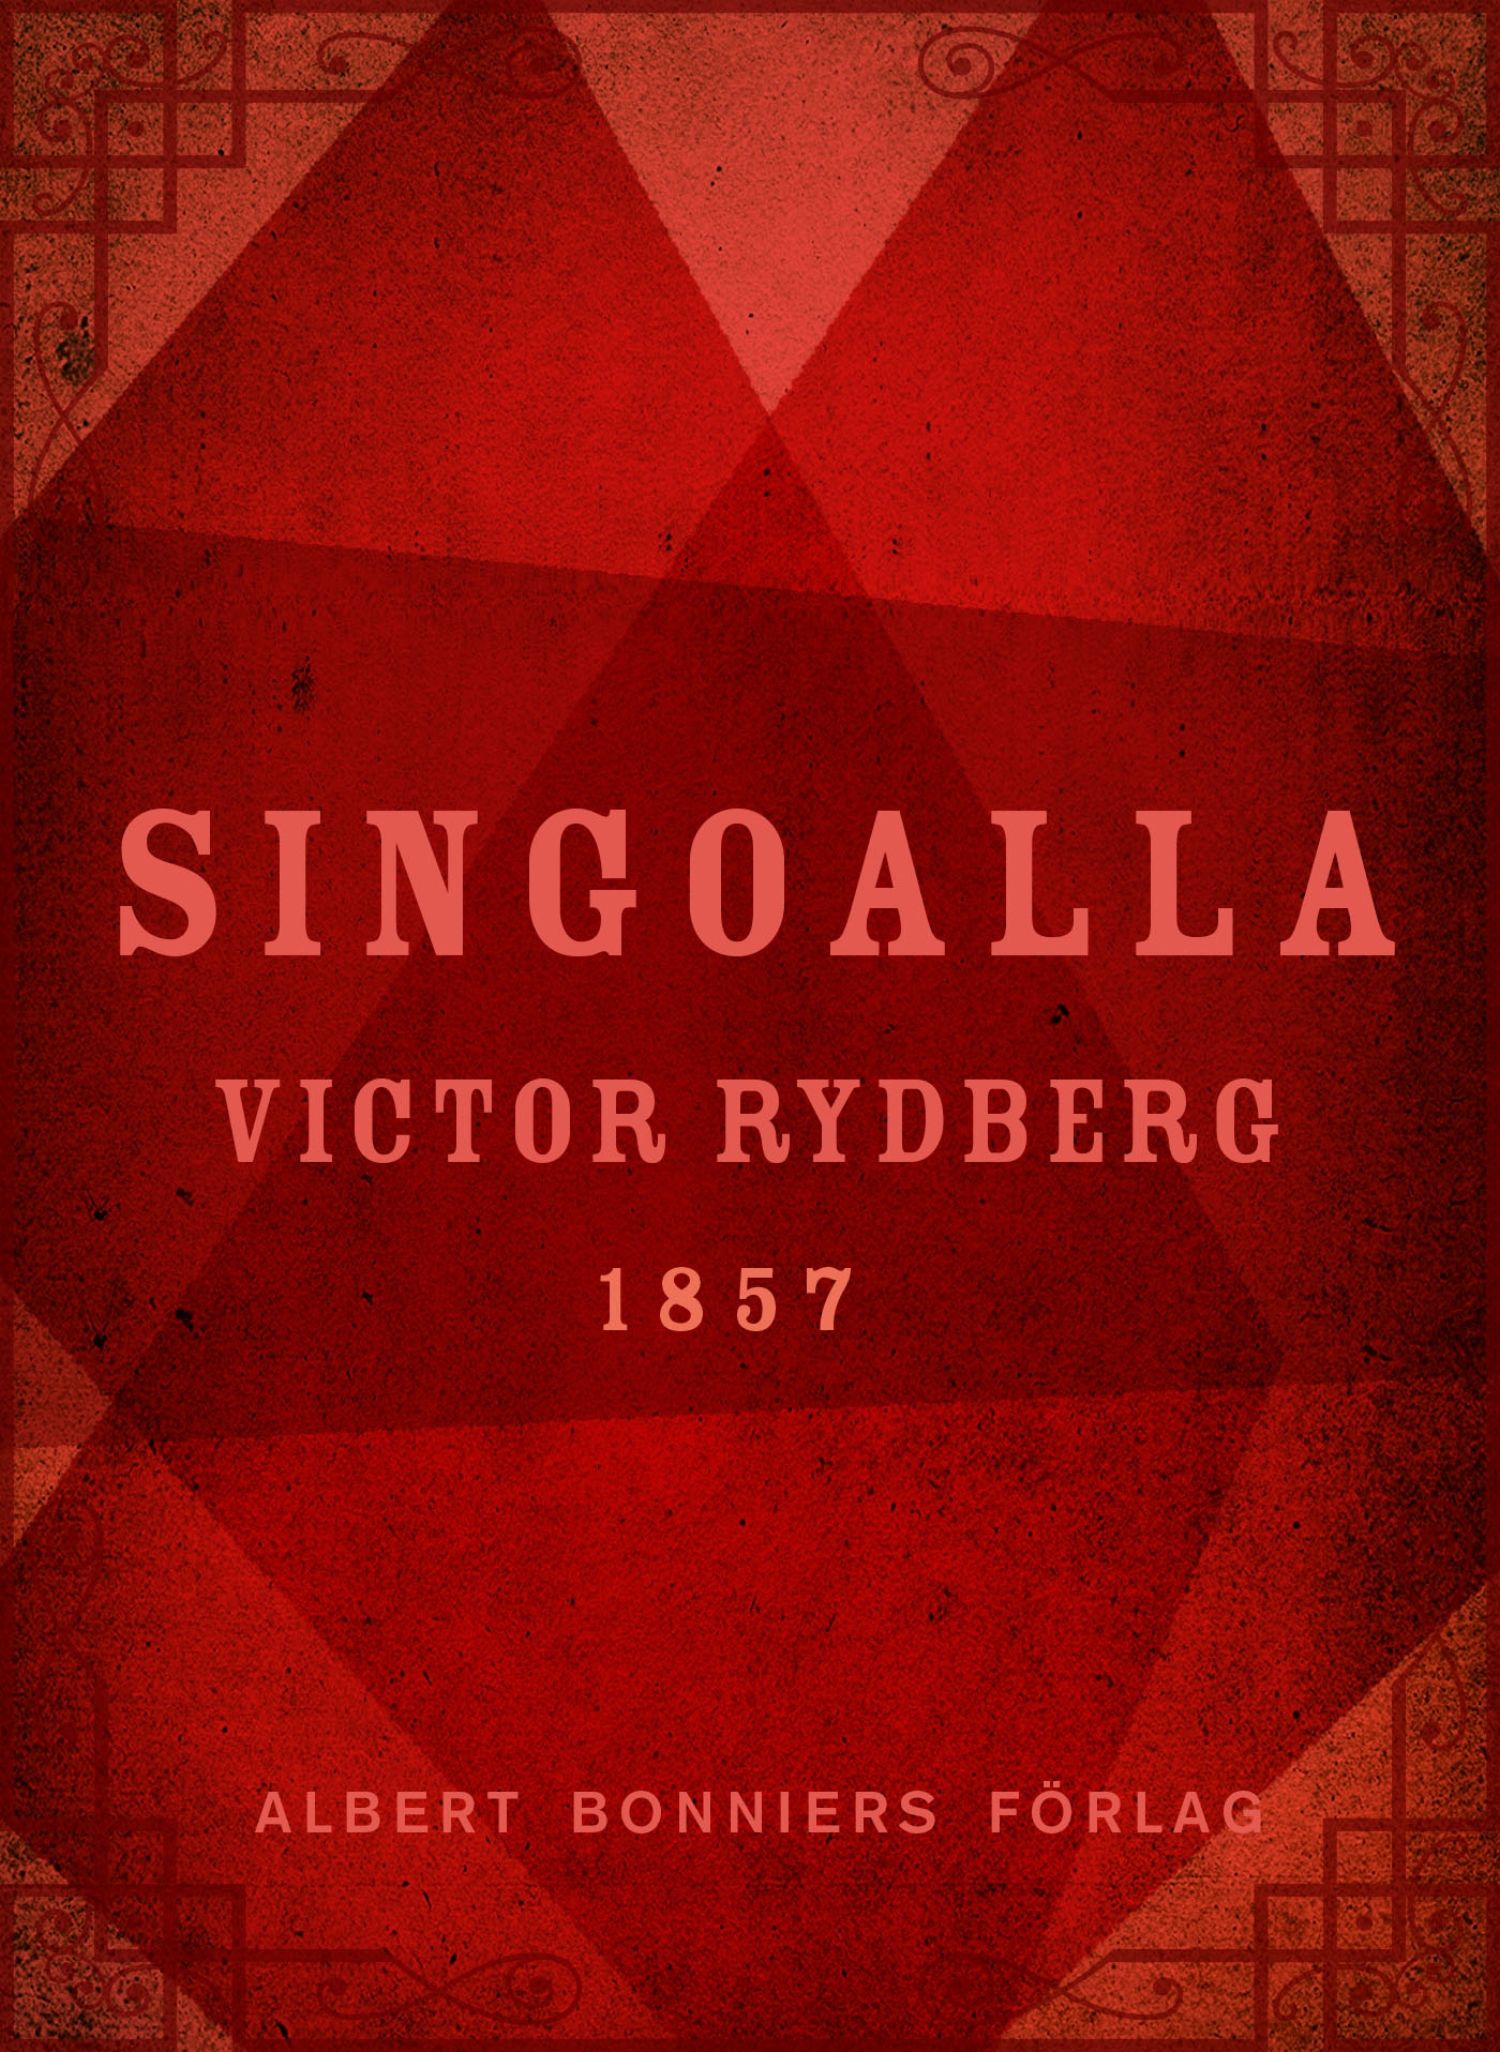 Singoalla, e-bog af Viktor Rydberg